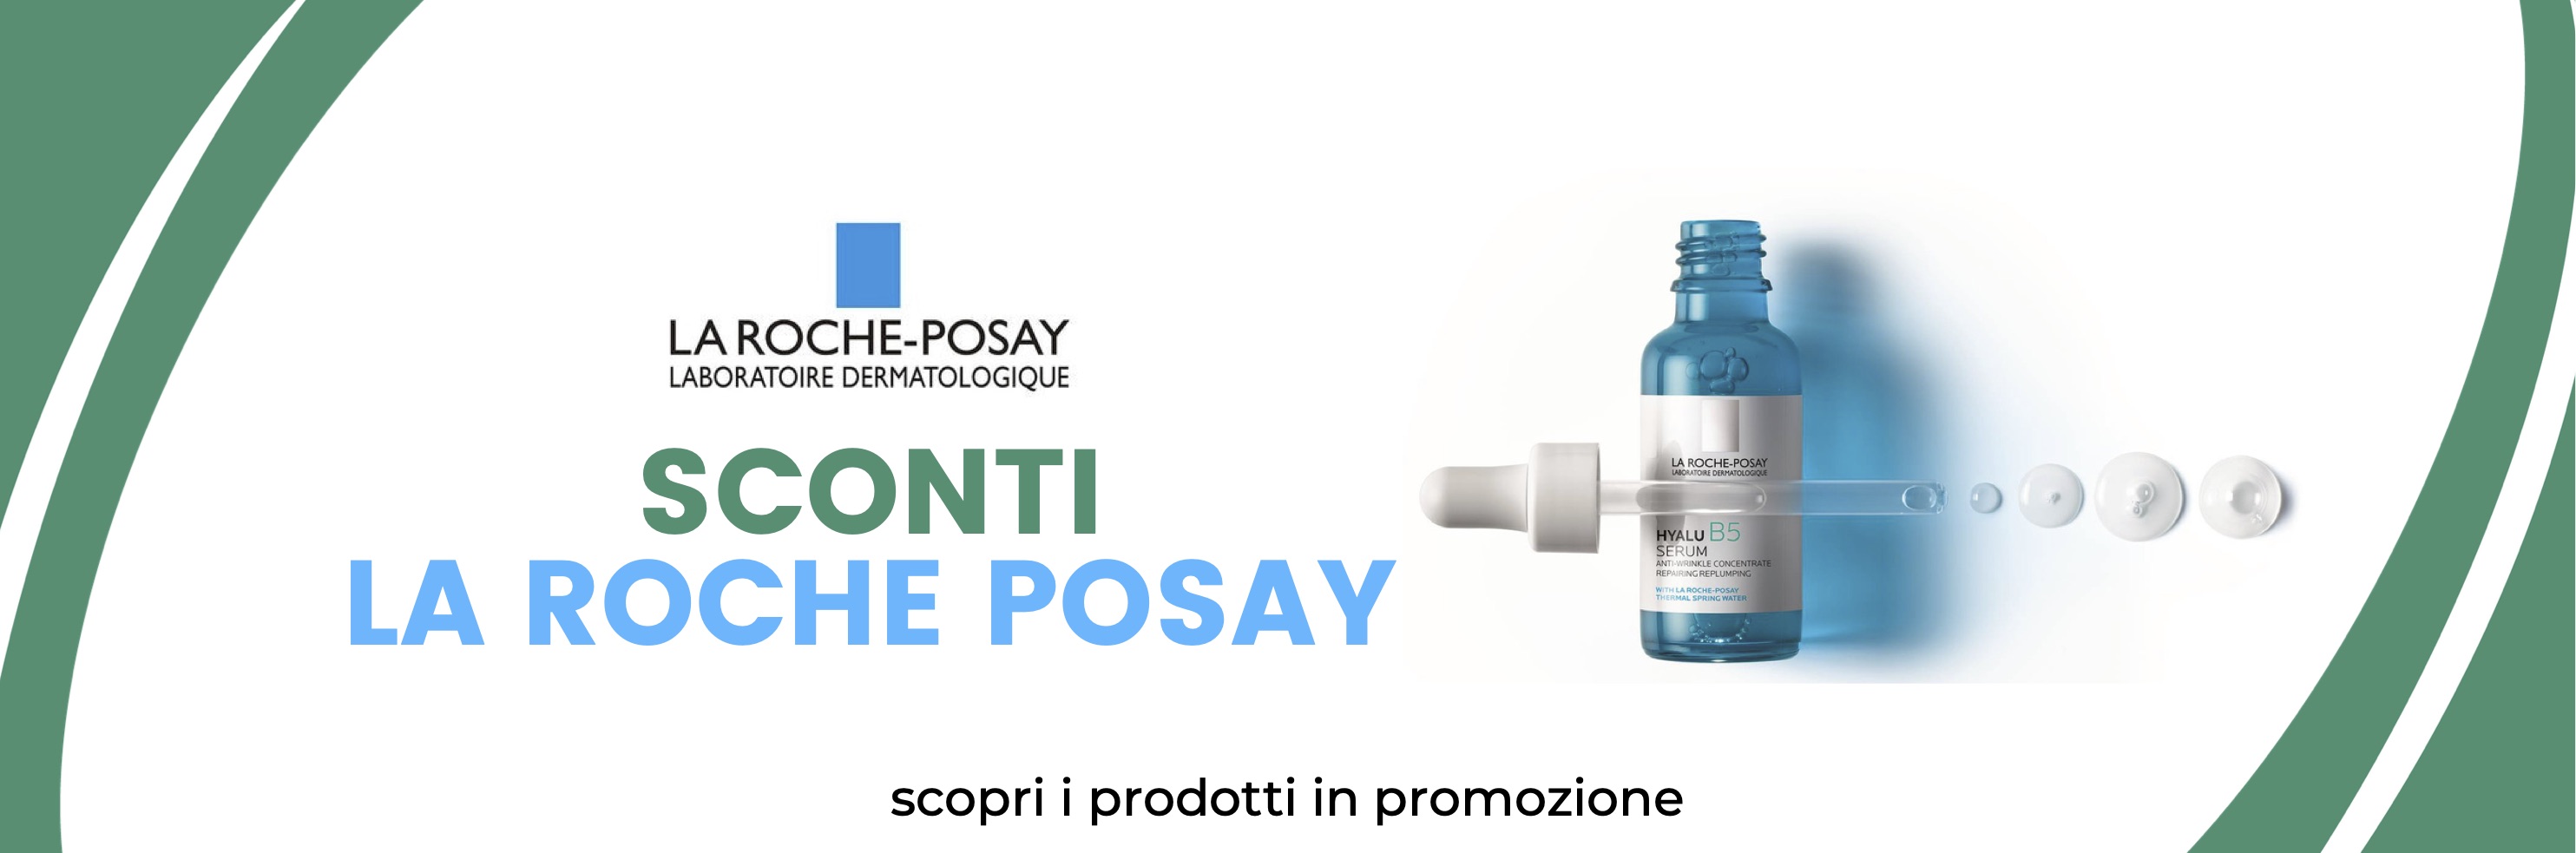 Sconti La Roche Posay Farmacia Della Bona online